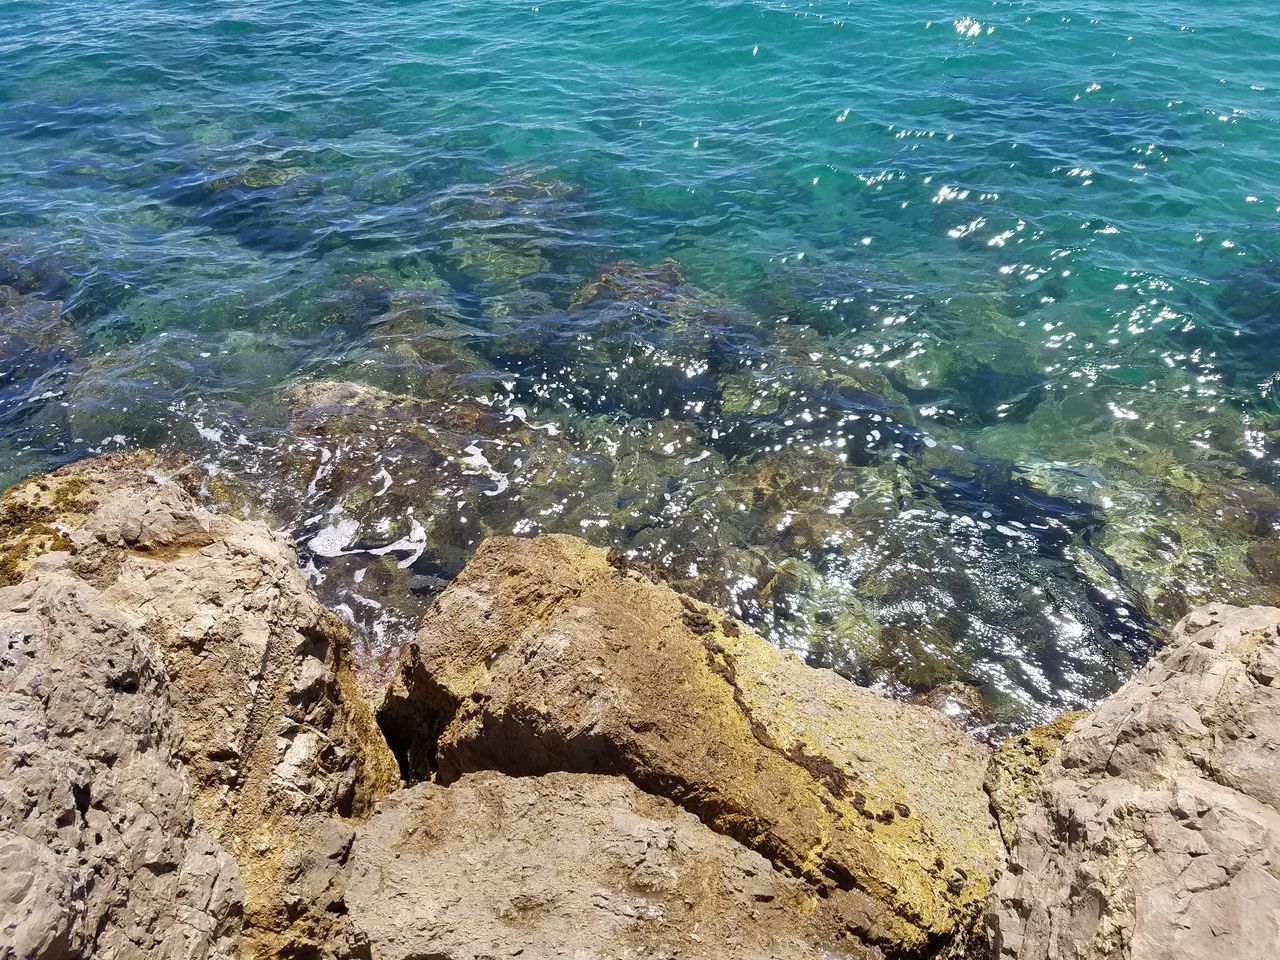 HIGH ANGLE VIEW OF ROCKS ON SEA